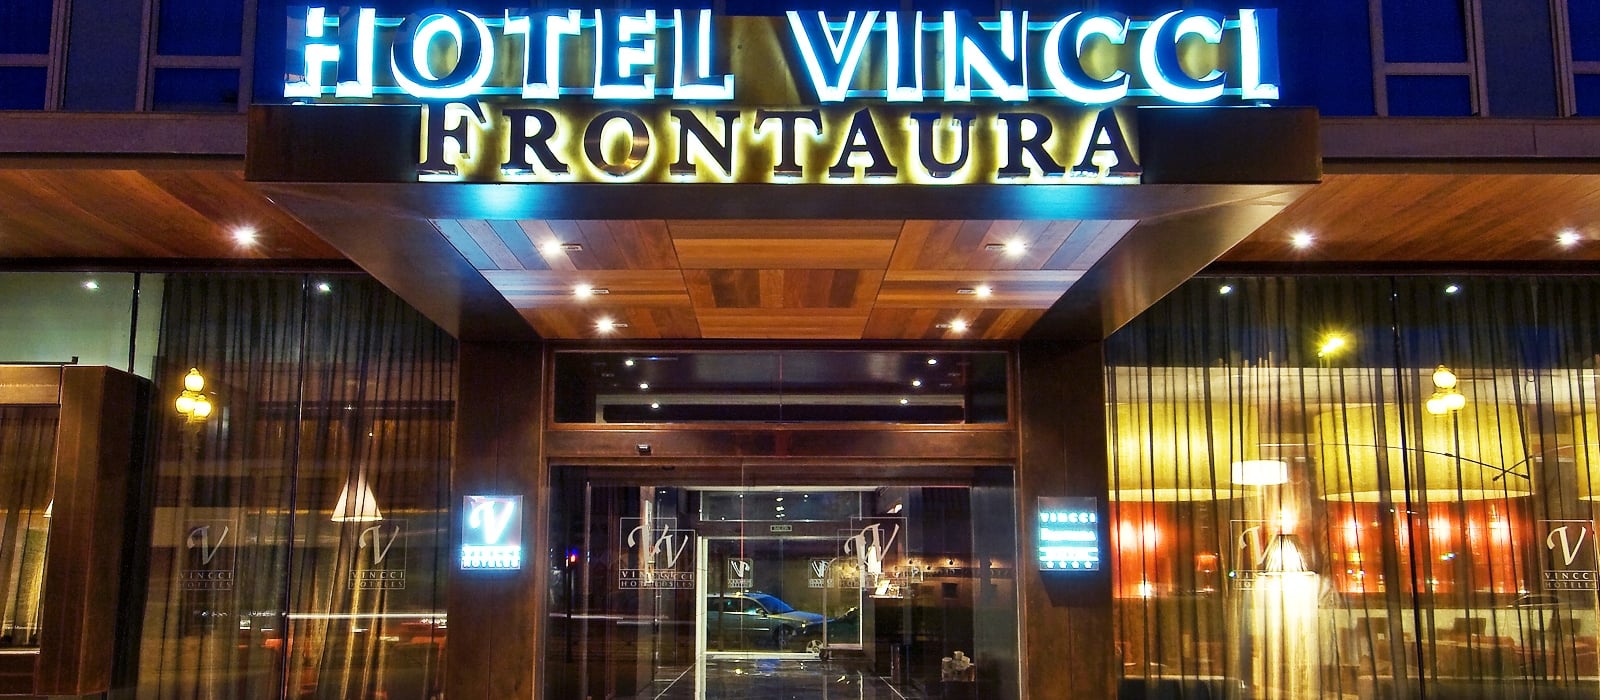 Facade-Hotel Valladolid Frontaura - Vincci Hoteles